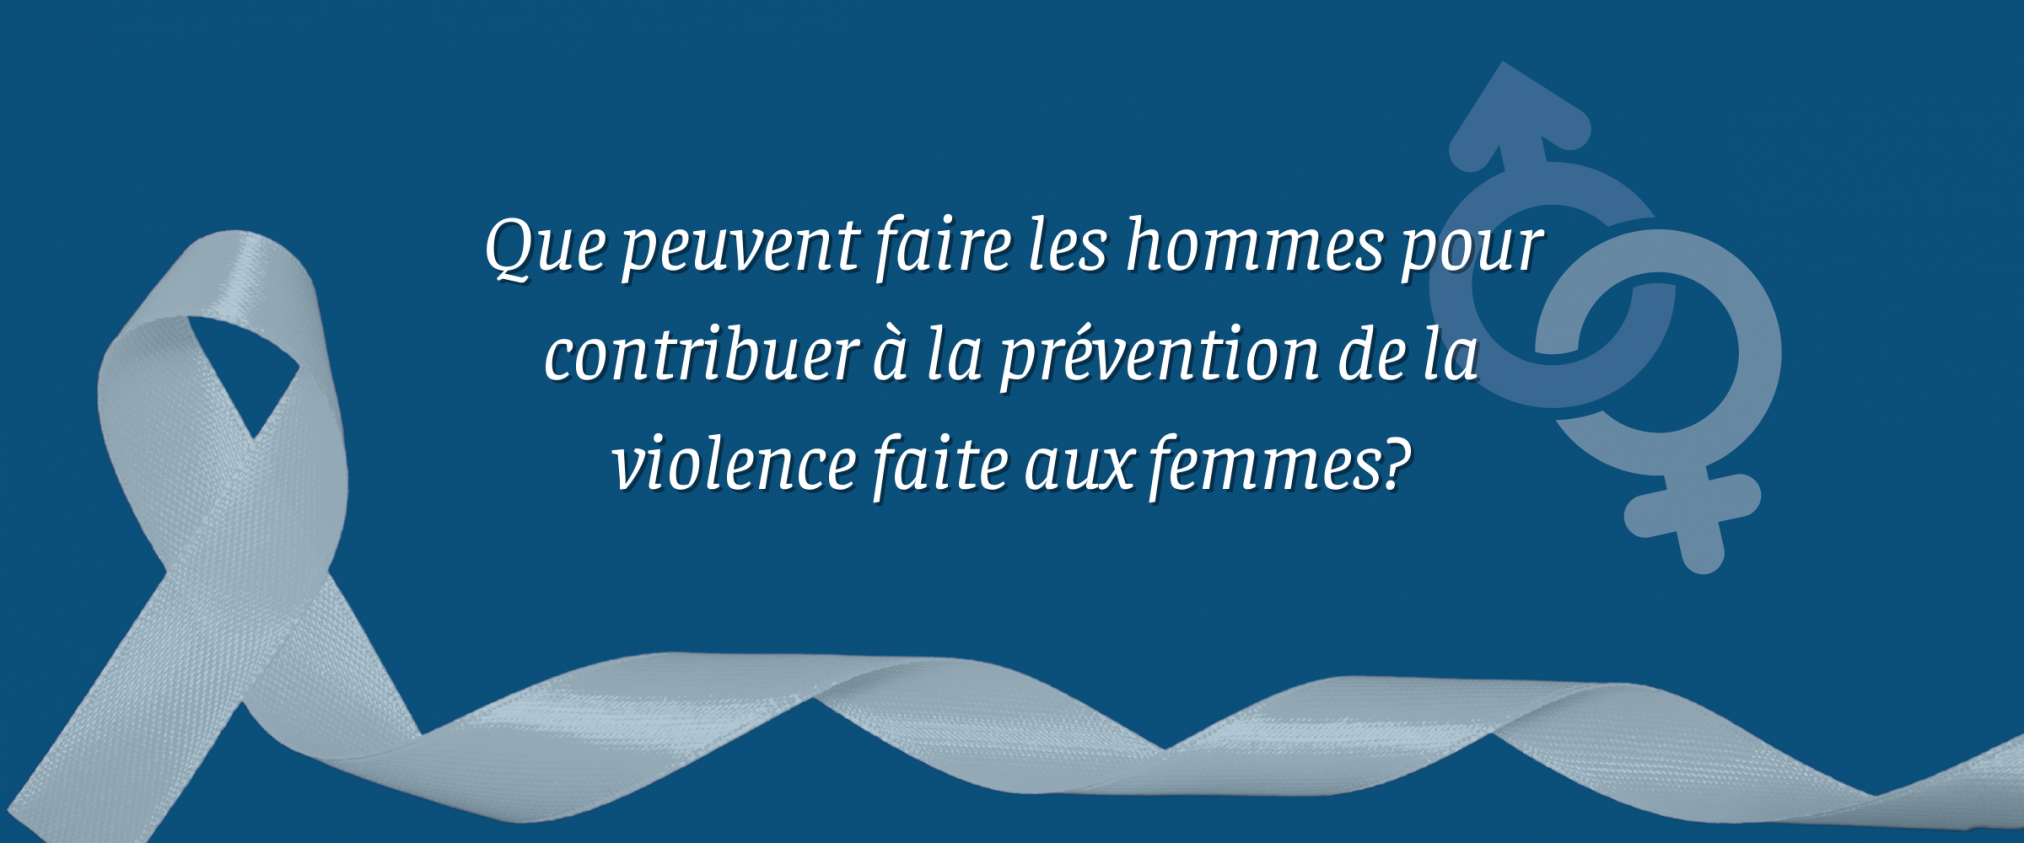 Que peuvent faire les hommes pour contribuer à la prévention de la violence faite aux femmes?